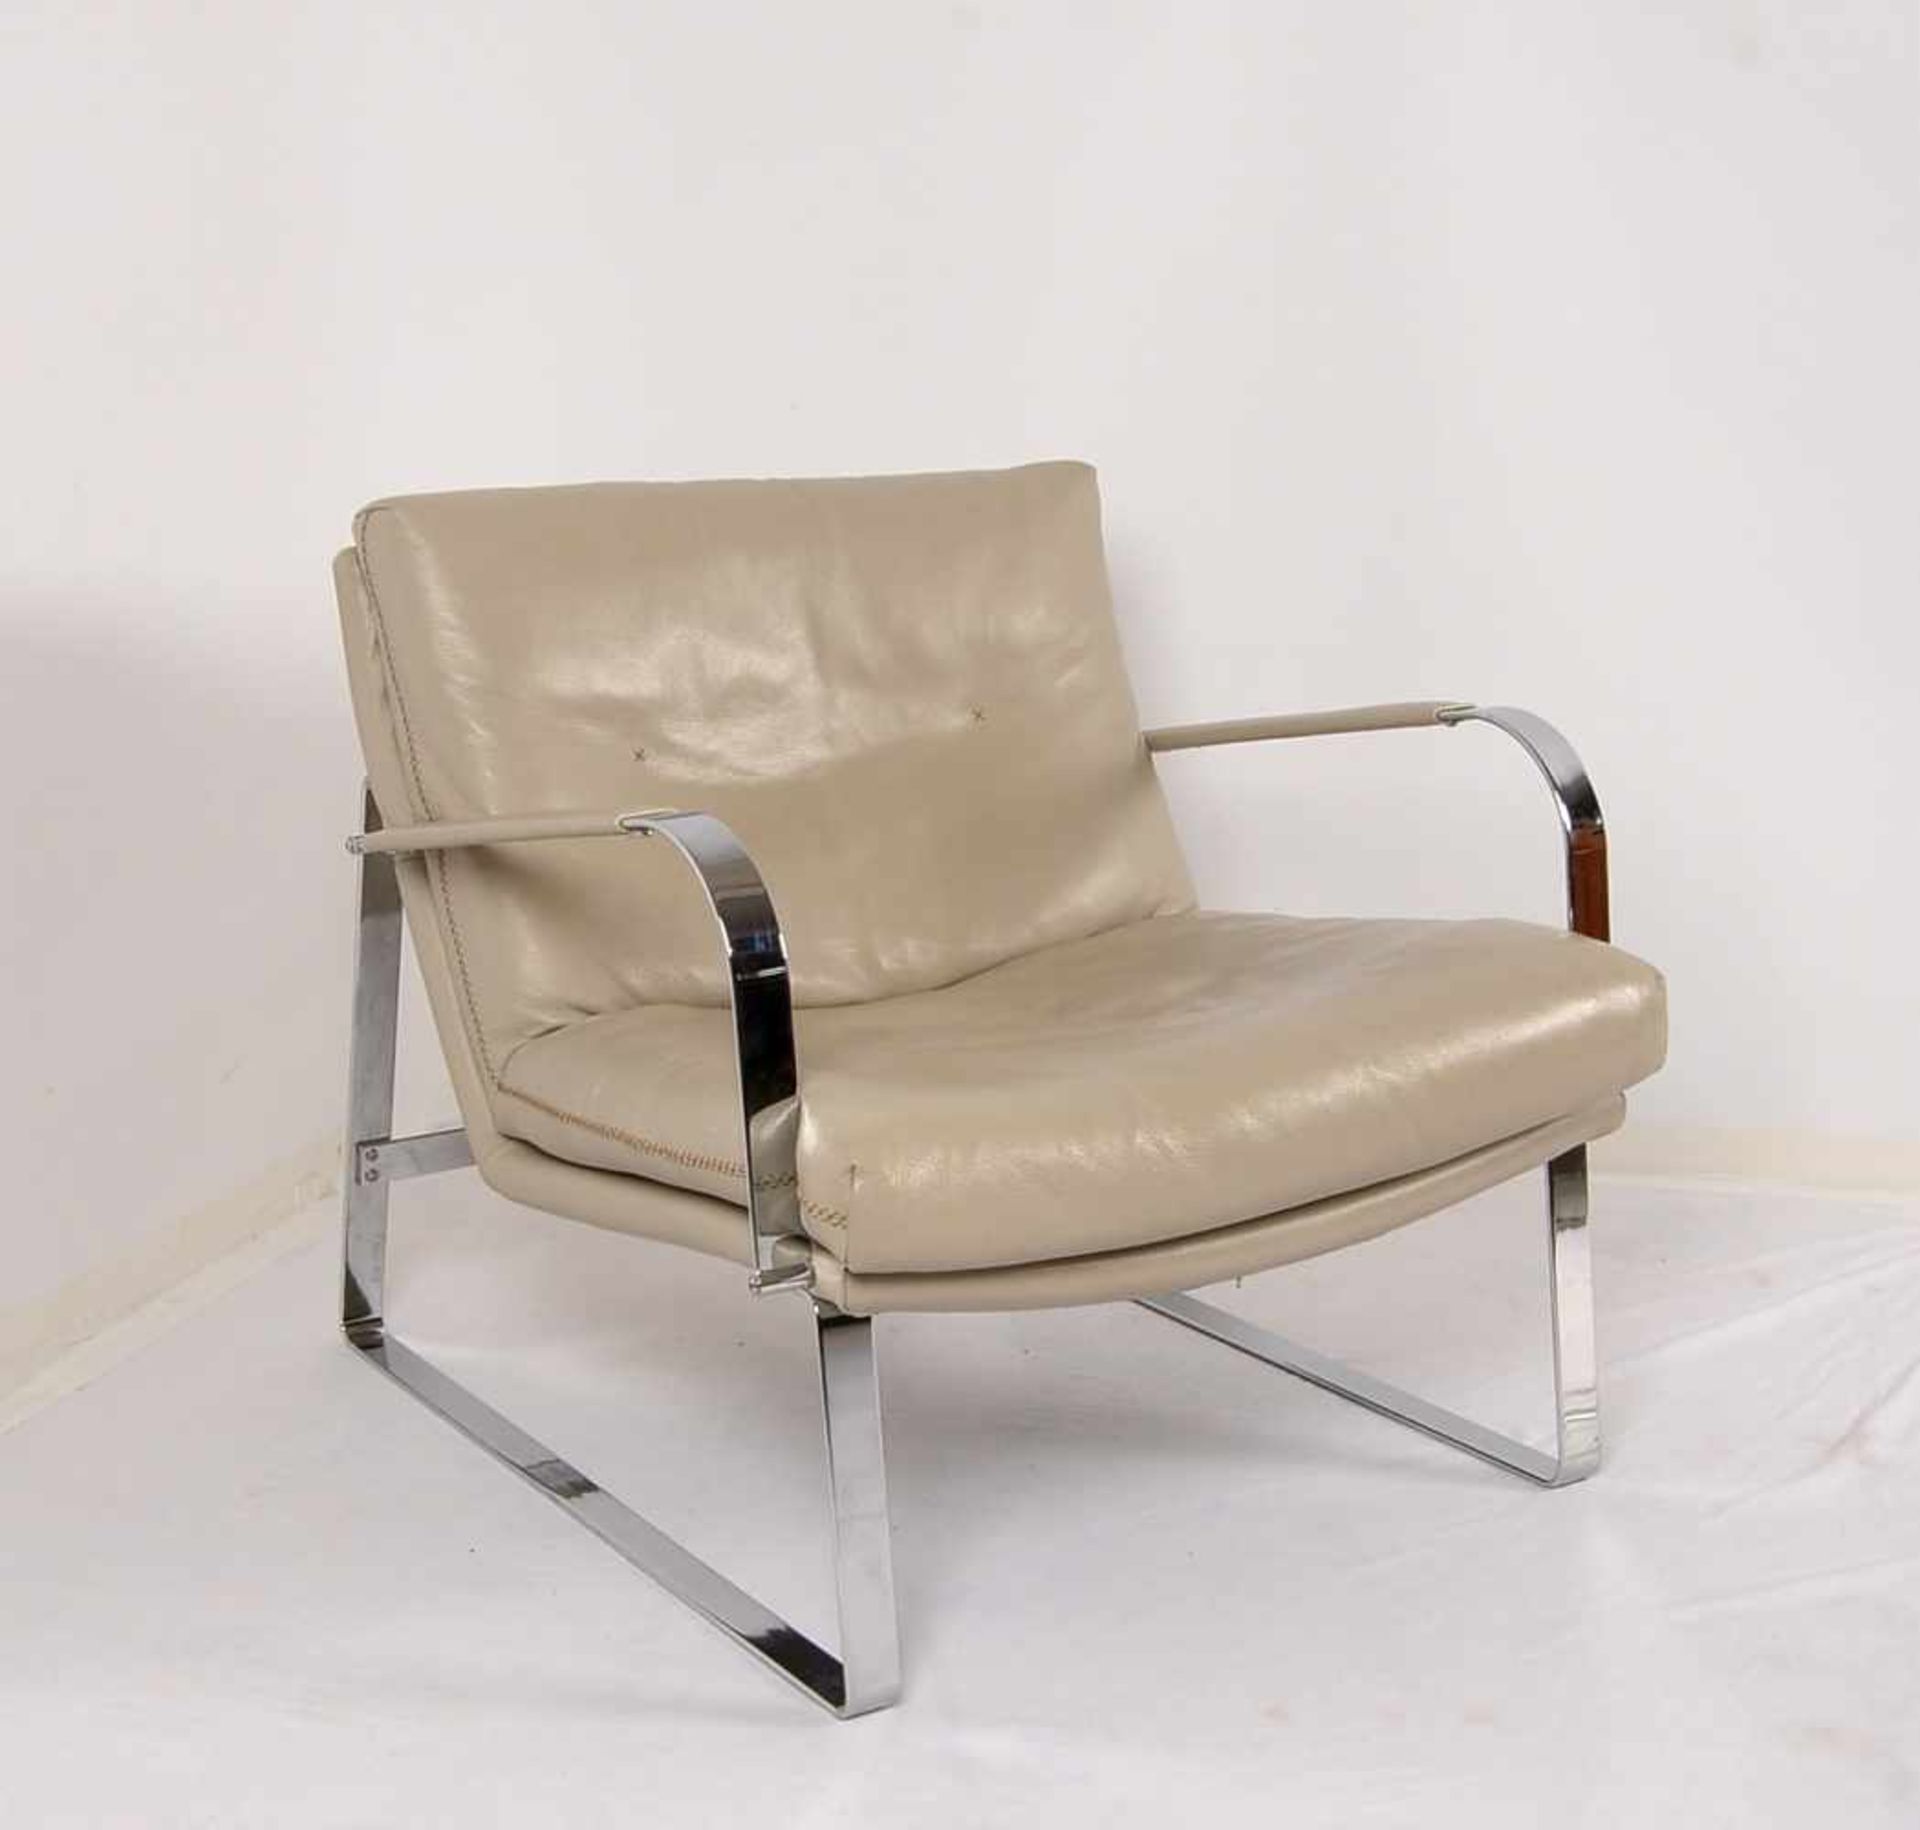 Armlehn-Chair, 'Conform', Chromgestell mit hell-kittfarbenem Leder, gepflegt/in gutem